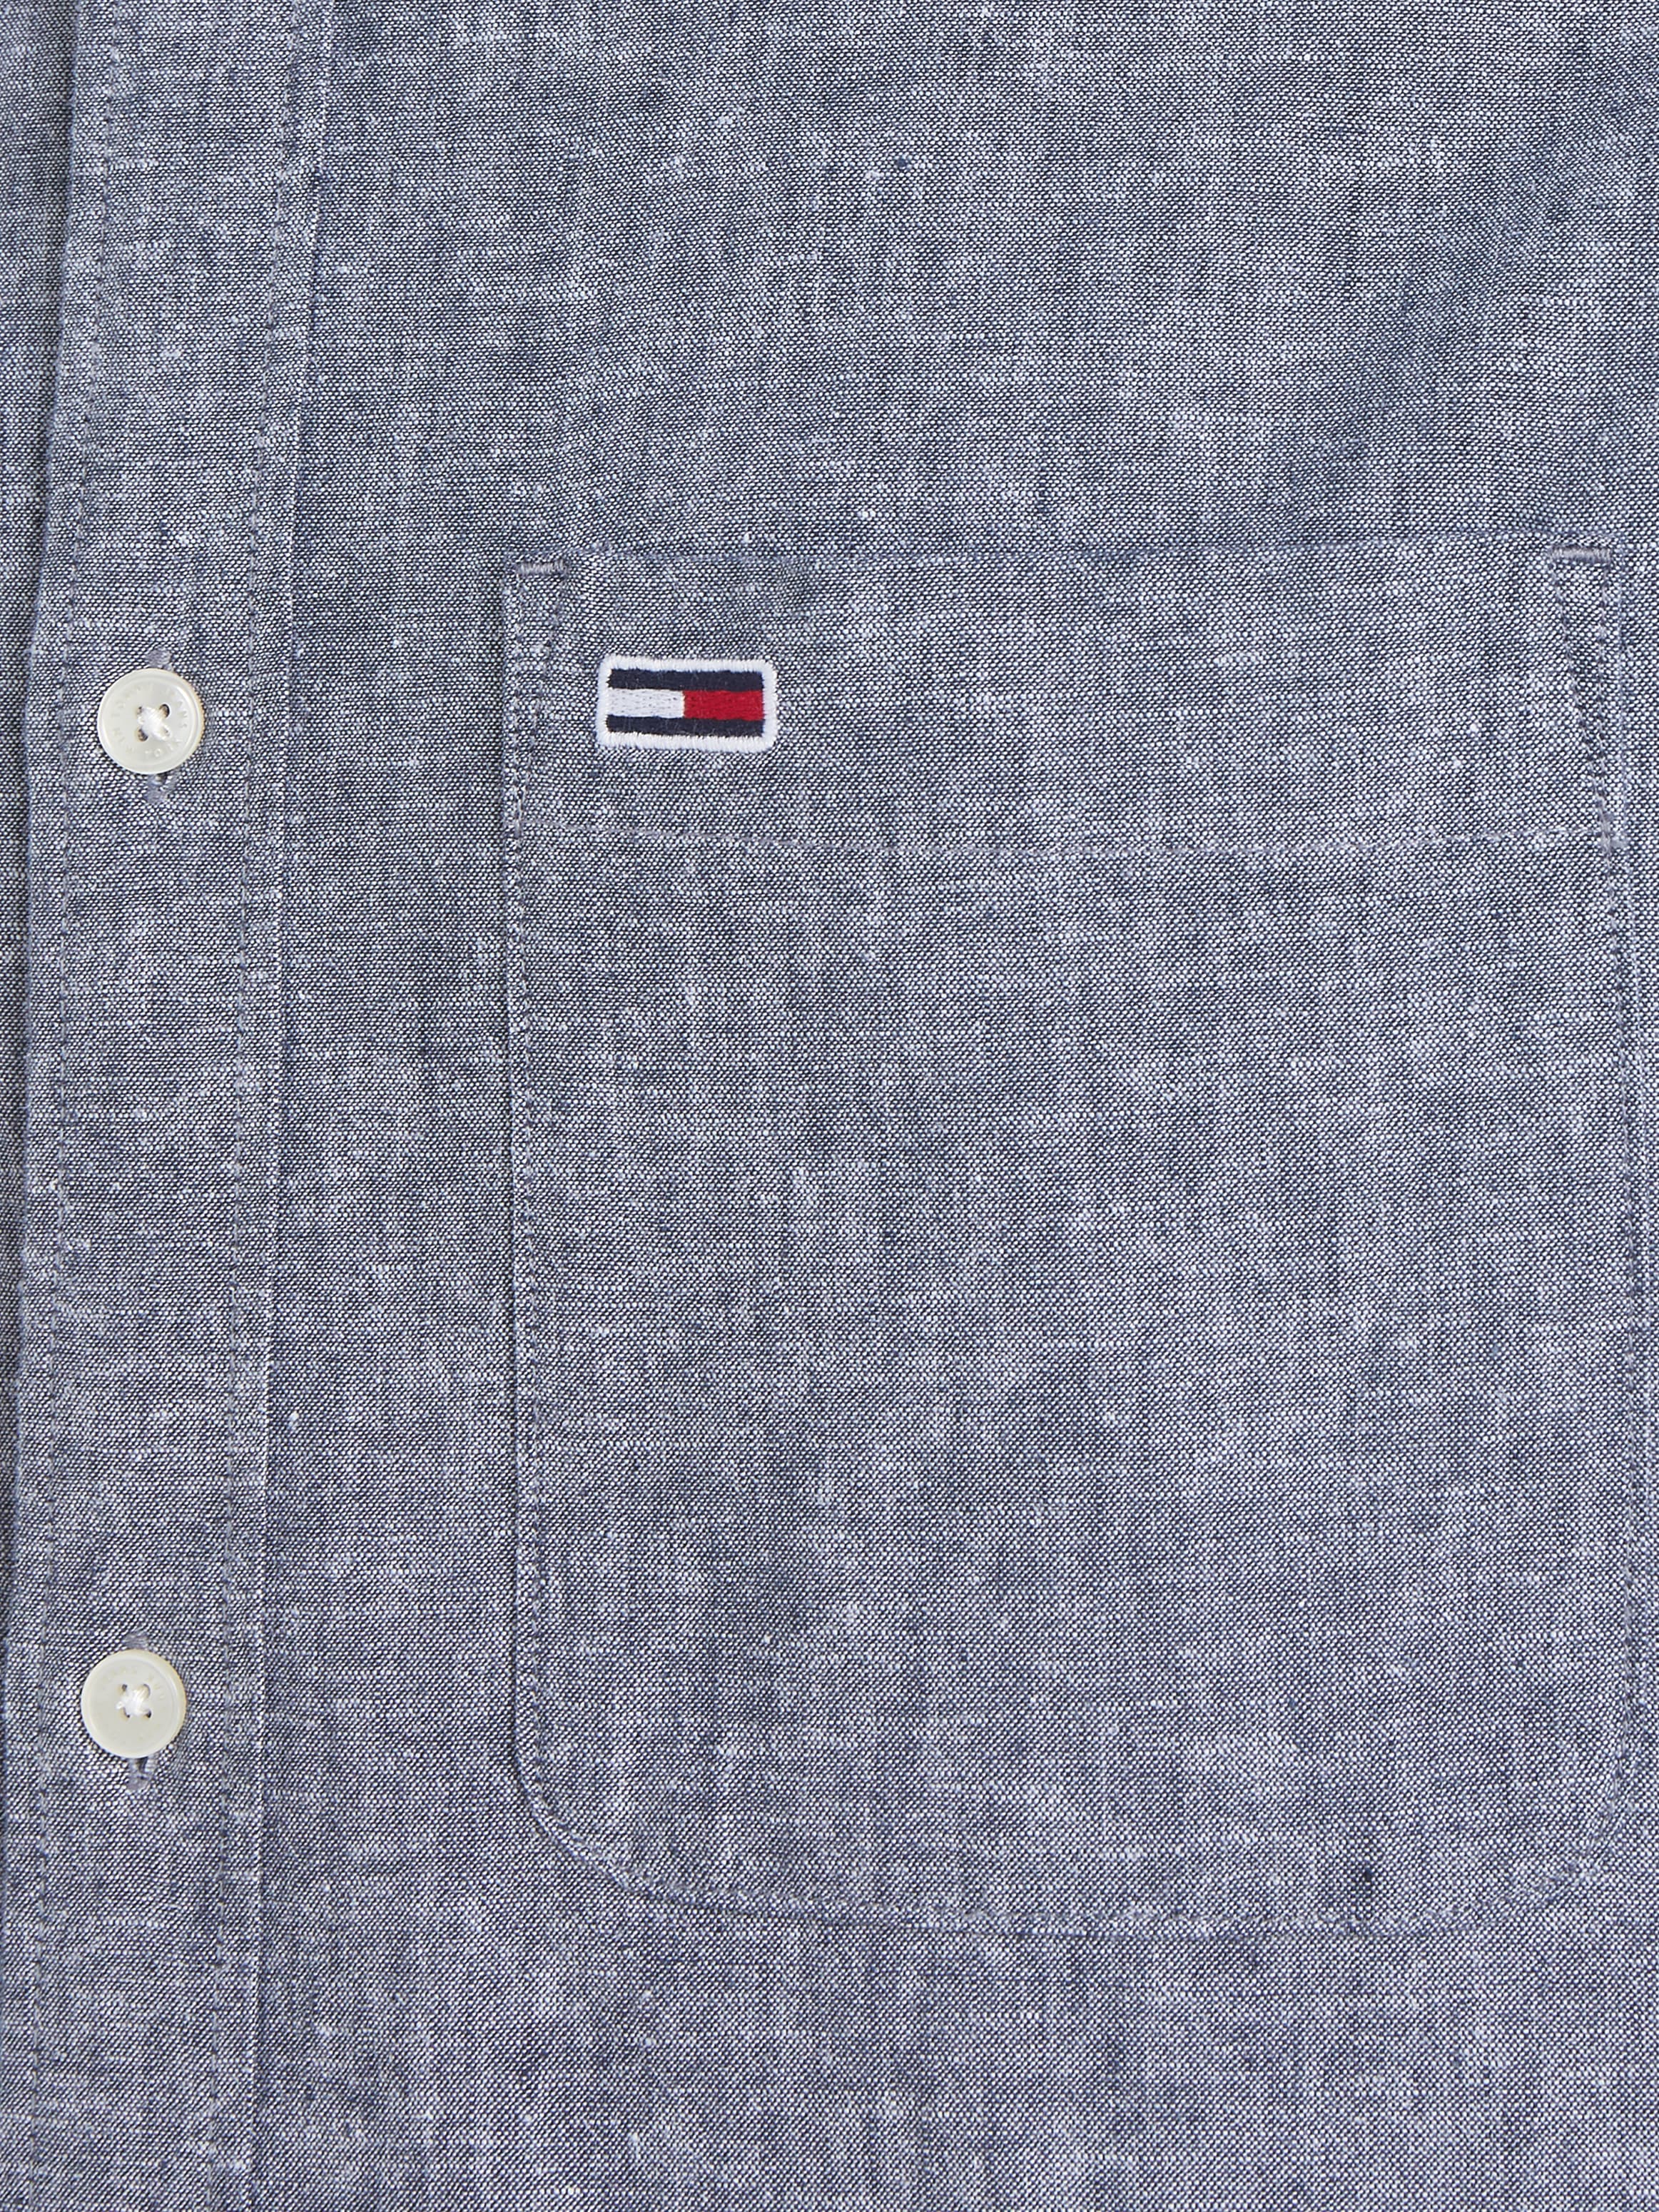 Tommy Jeans Langarmhemd »TJM REG MAO LINEN BLEND SHIRT«, in melierter Optik